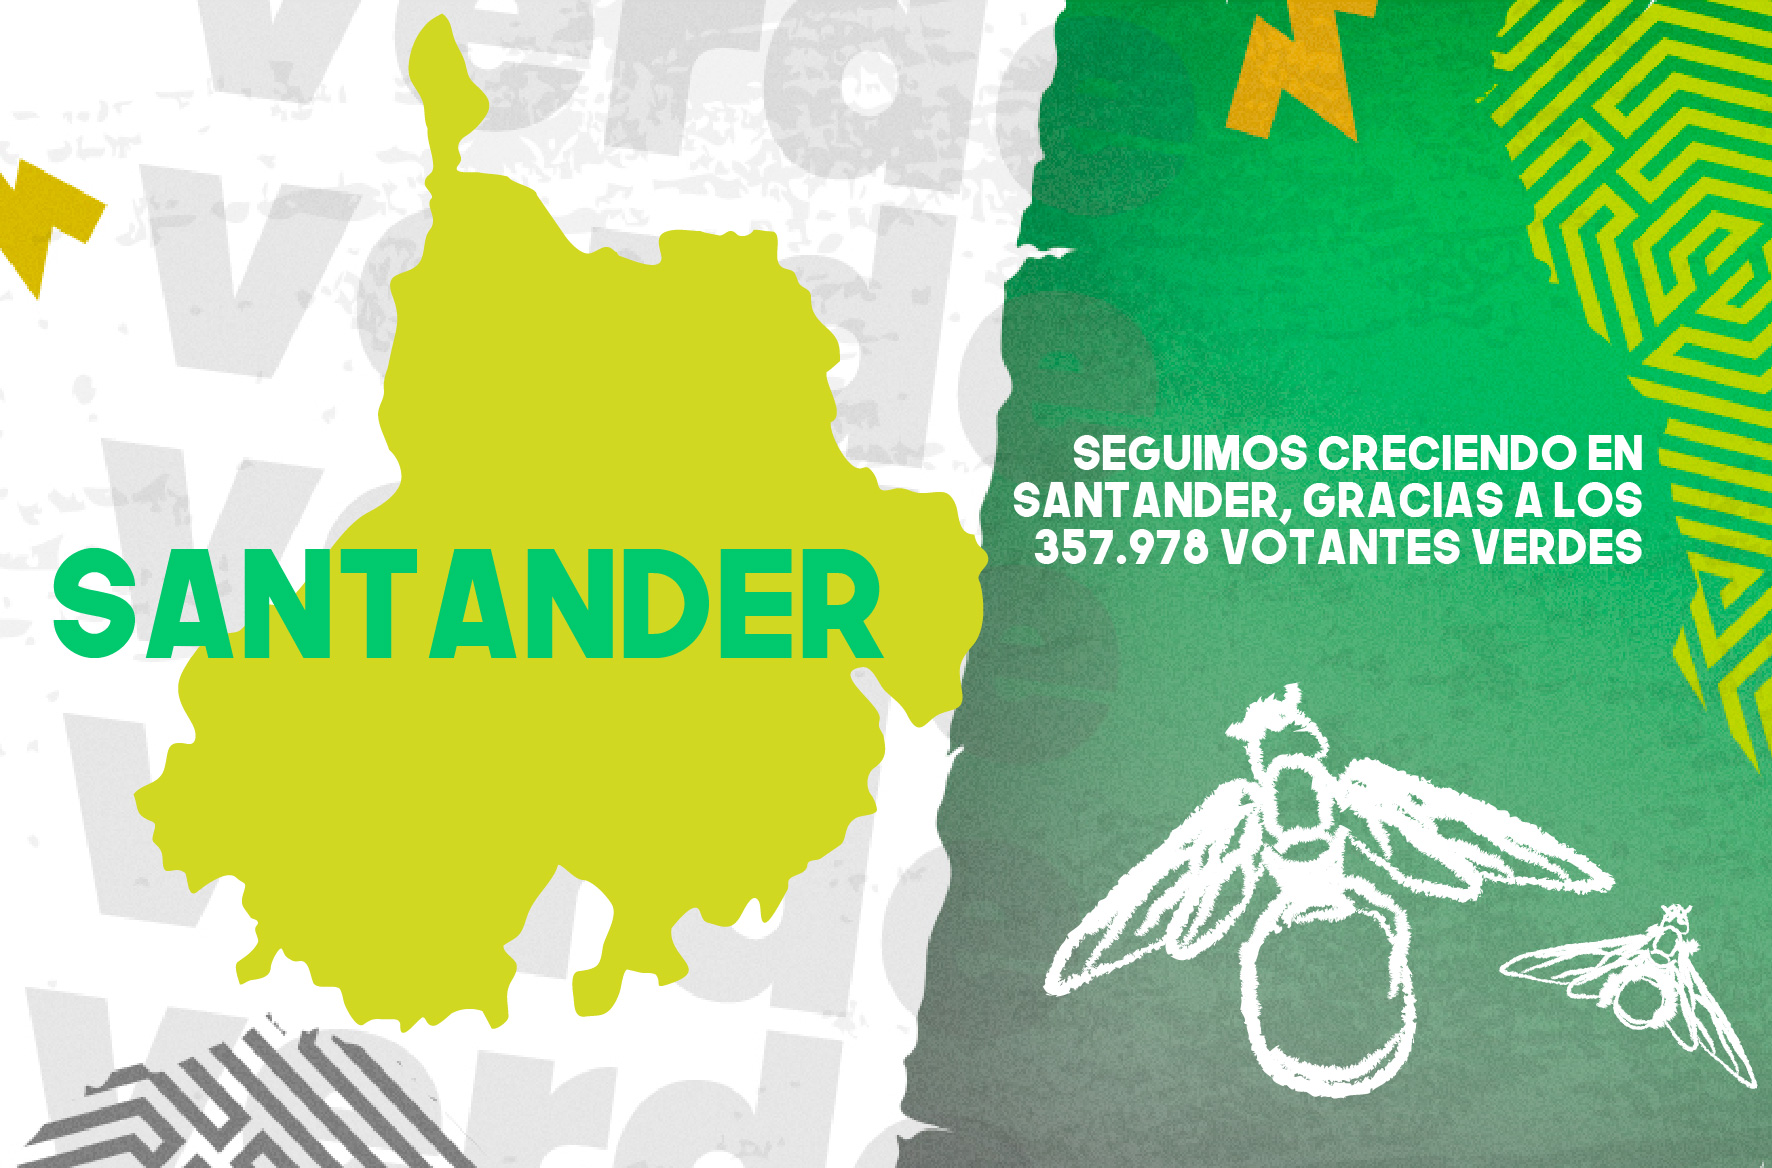 Seguimos creciendo en Santander, gracias a los 357.978 votantes Verdes